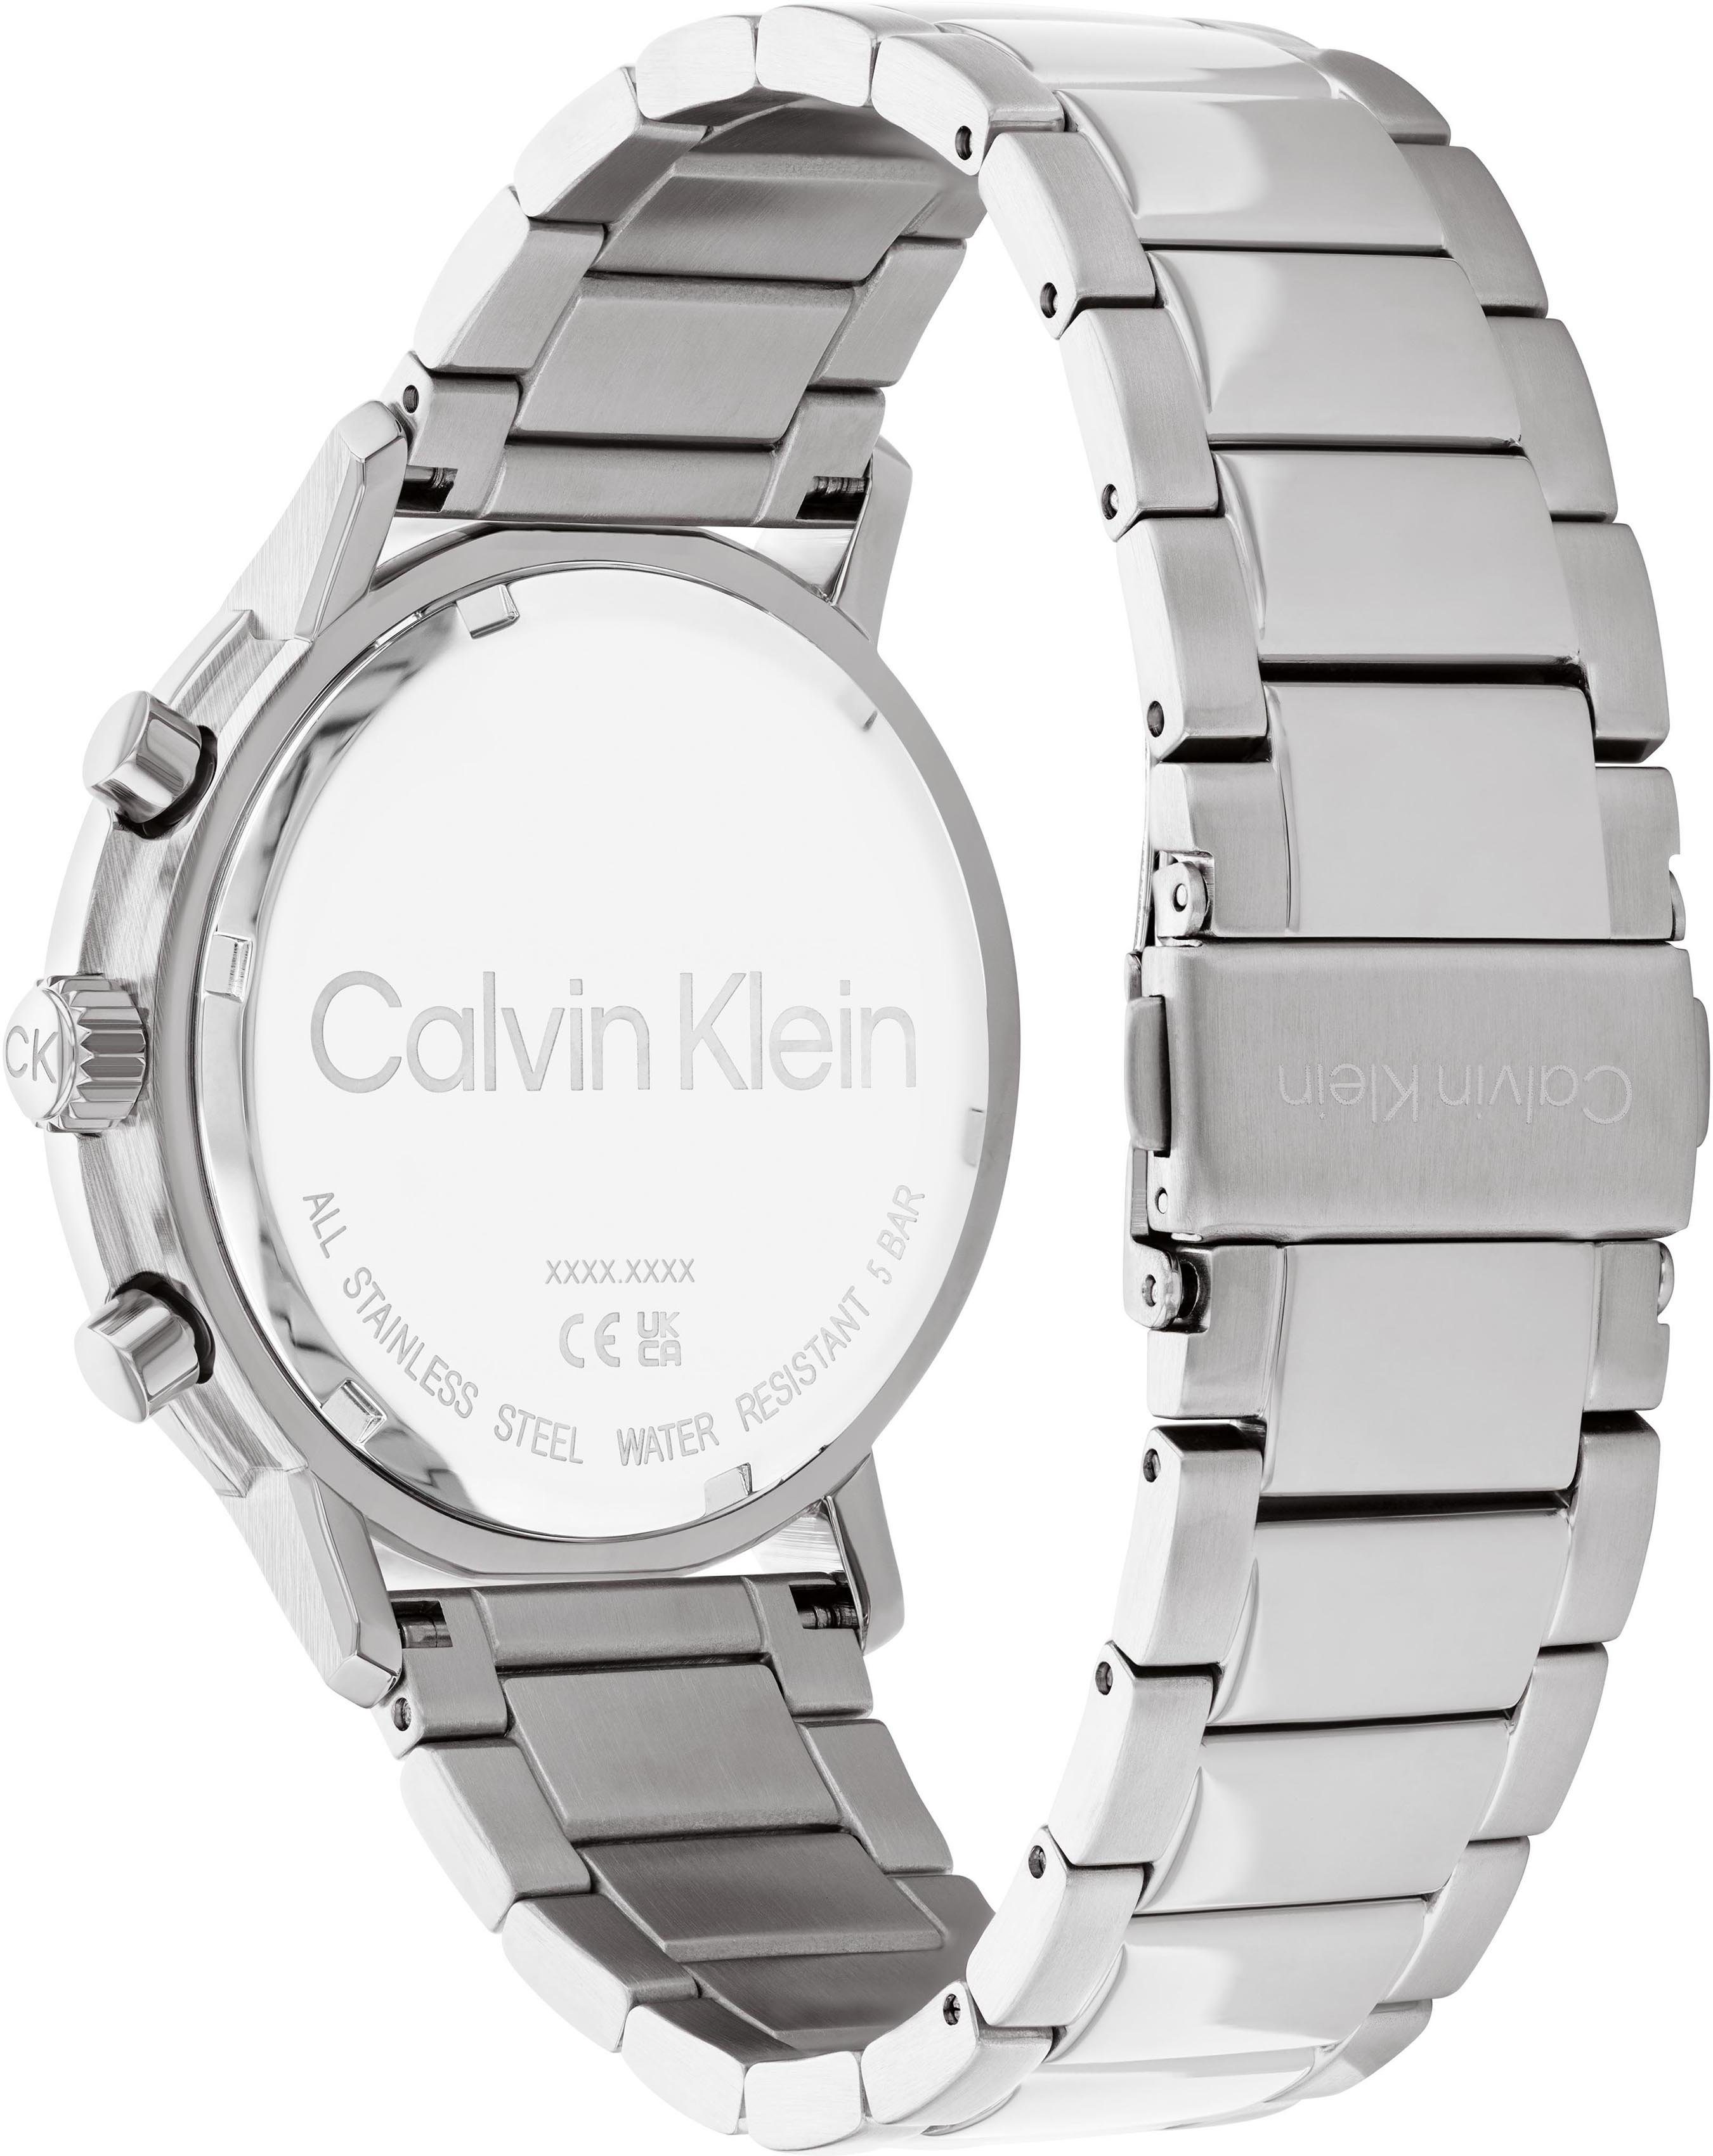 Calvin Klein Multifunktionsuhr 25200063 Gauge